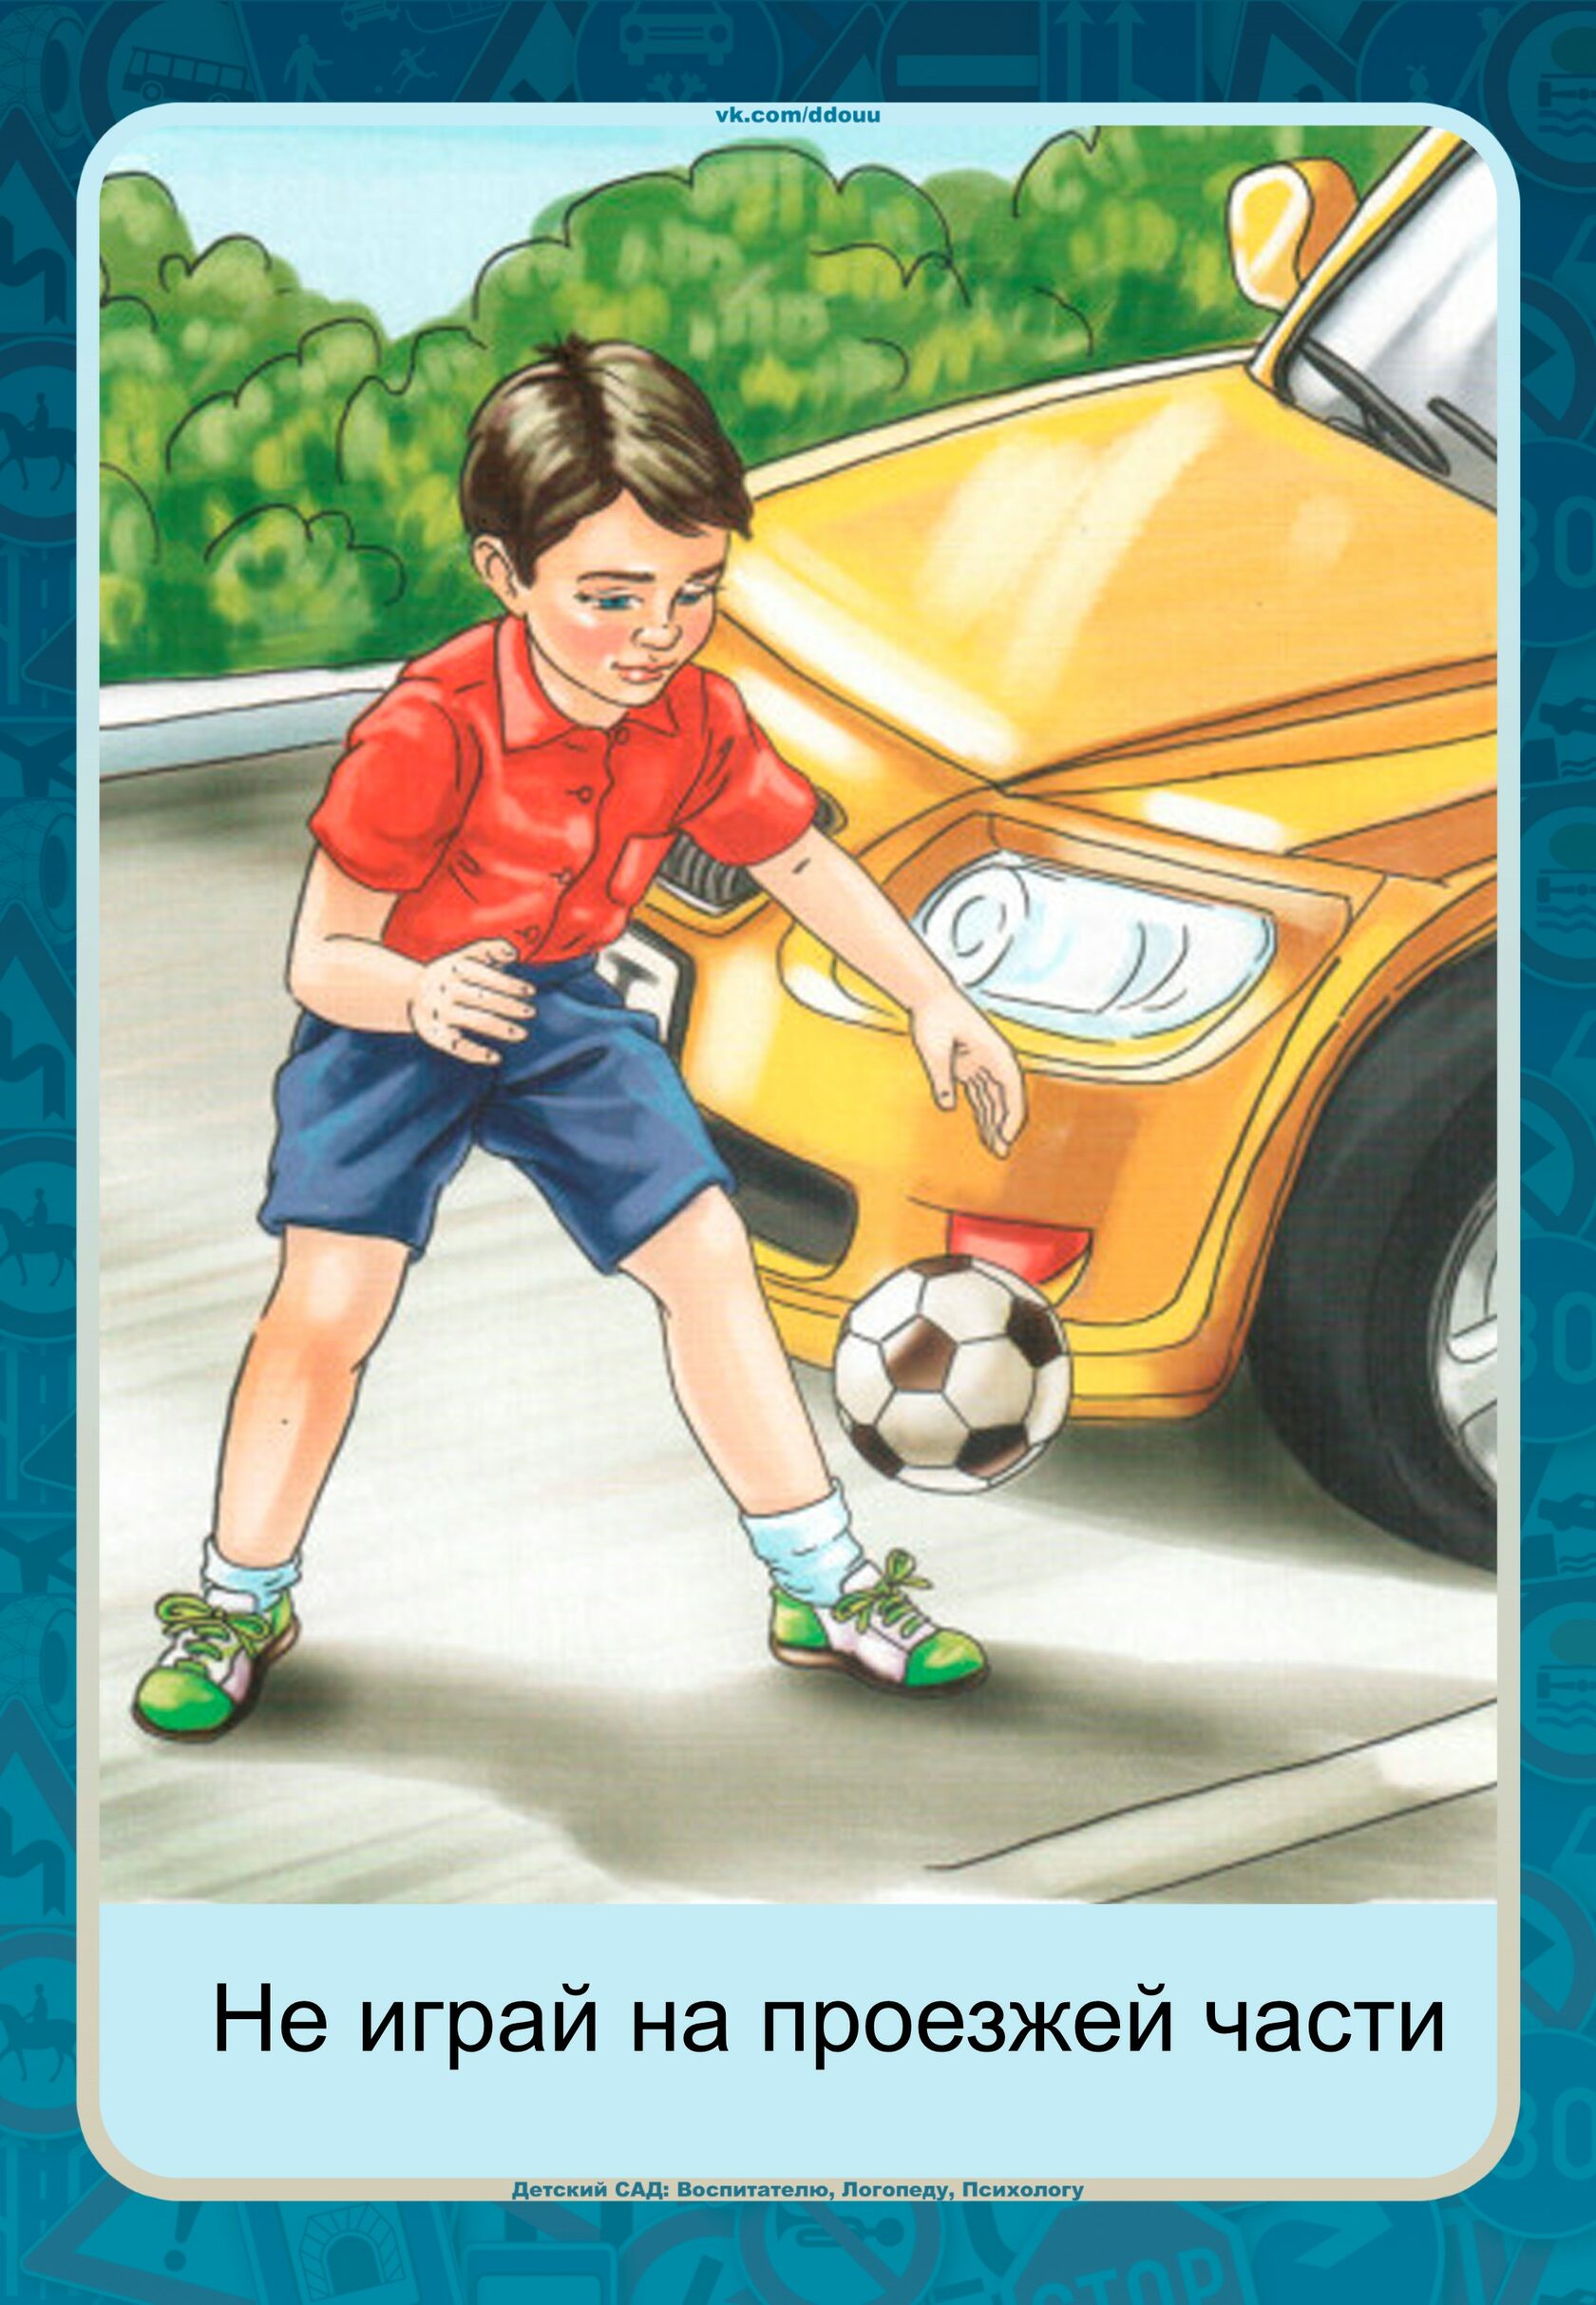 Дети играющие на дороге. Мальчик с мячом на дороге. Картина для детей не играй на дороге. Дети играют на дороге иллюстрация. Рисунки с детьми играющимися на дороге.